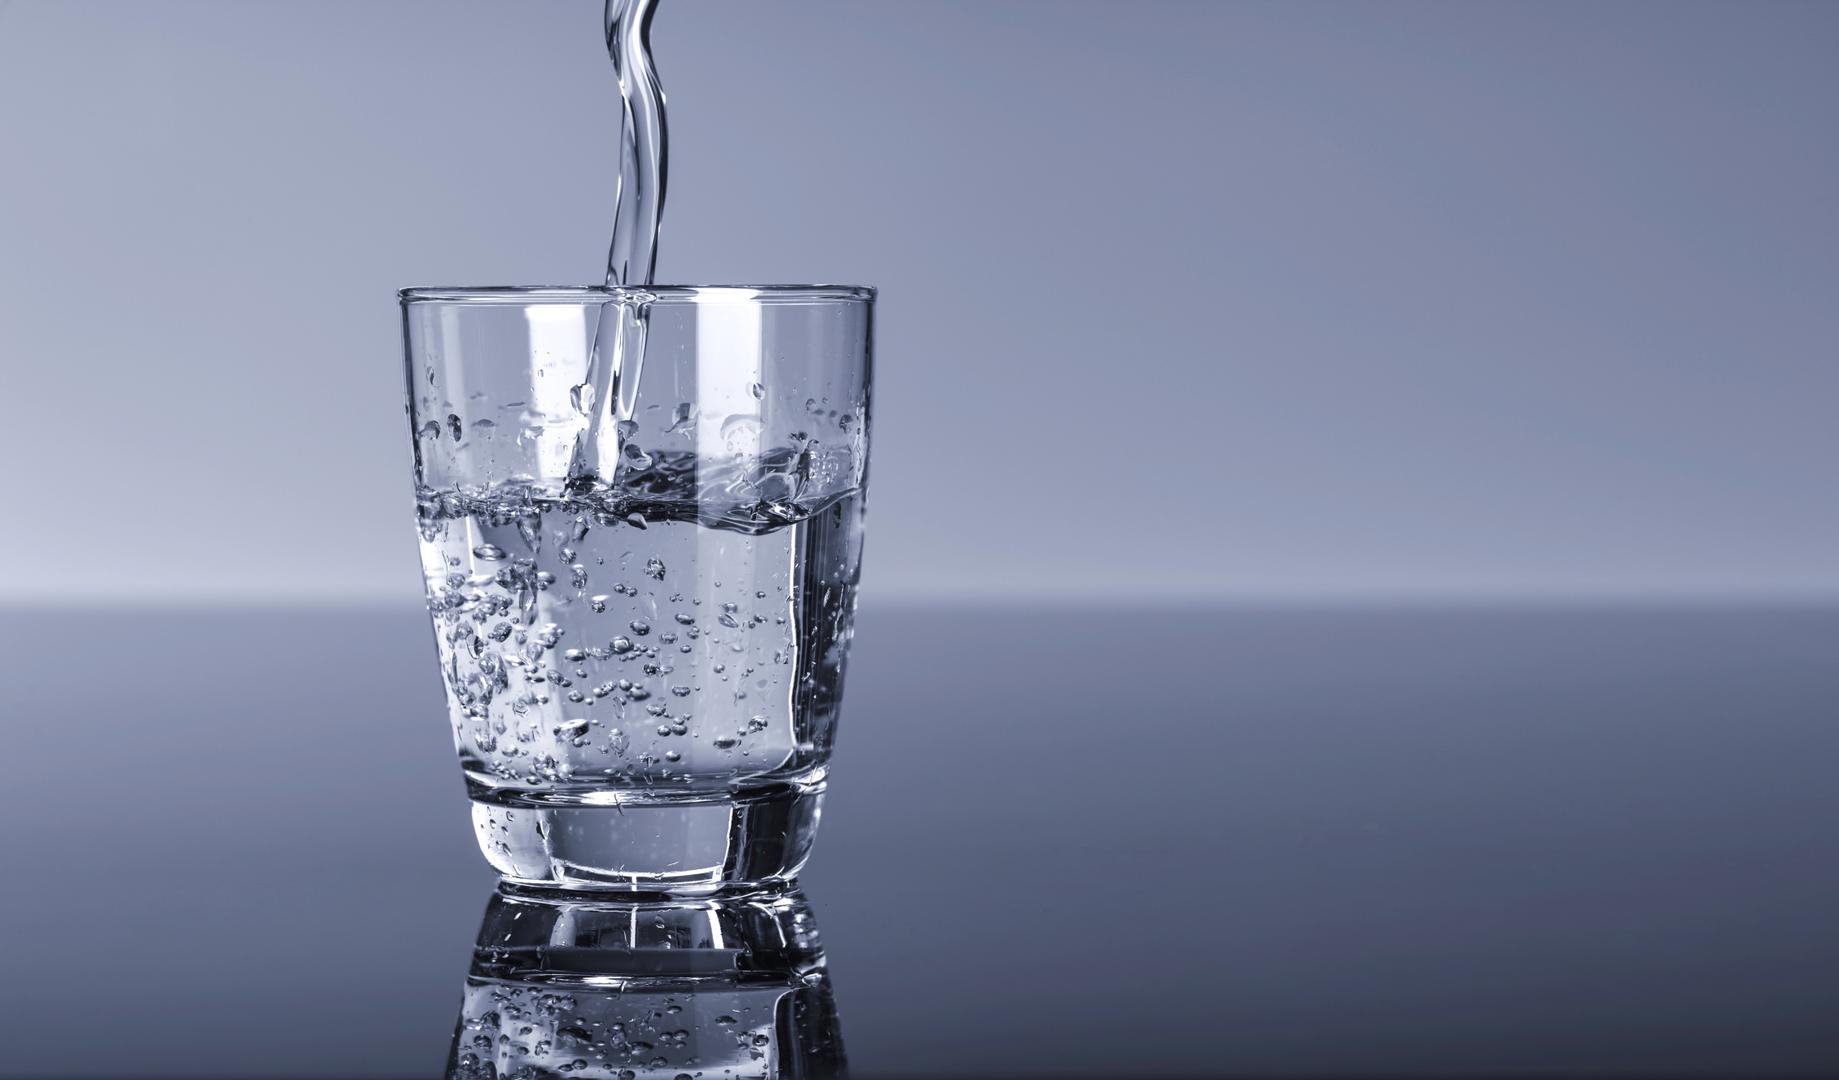 Stručnjaci s Harvarda tvrde da nema znanstvenih dokaza za tvrdnje da je potrebno piti točno osam čaša tekućine na dan. Naglasak je na "tekućini" jer kroz namirnice također tijelu osiguravamo određenu količinu tekućine.